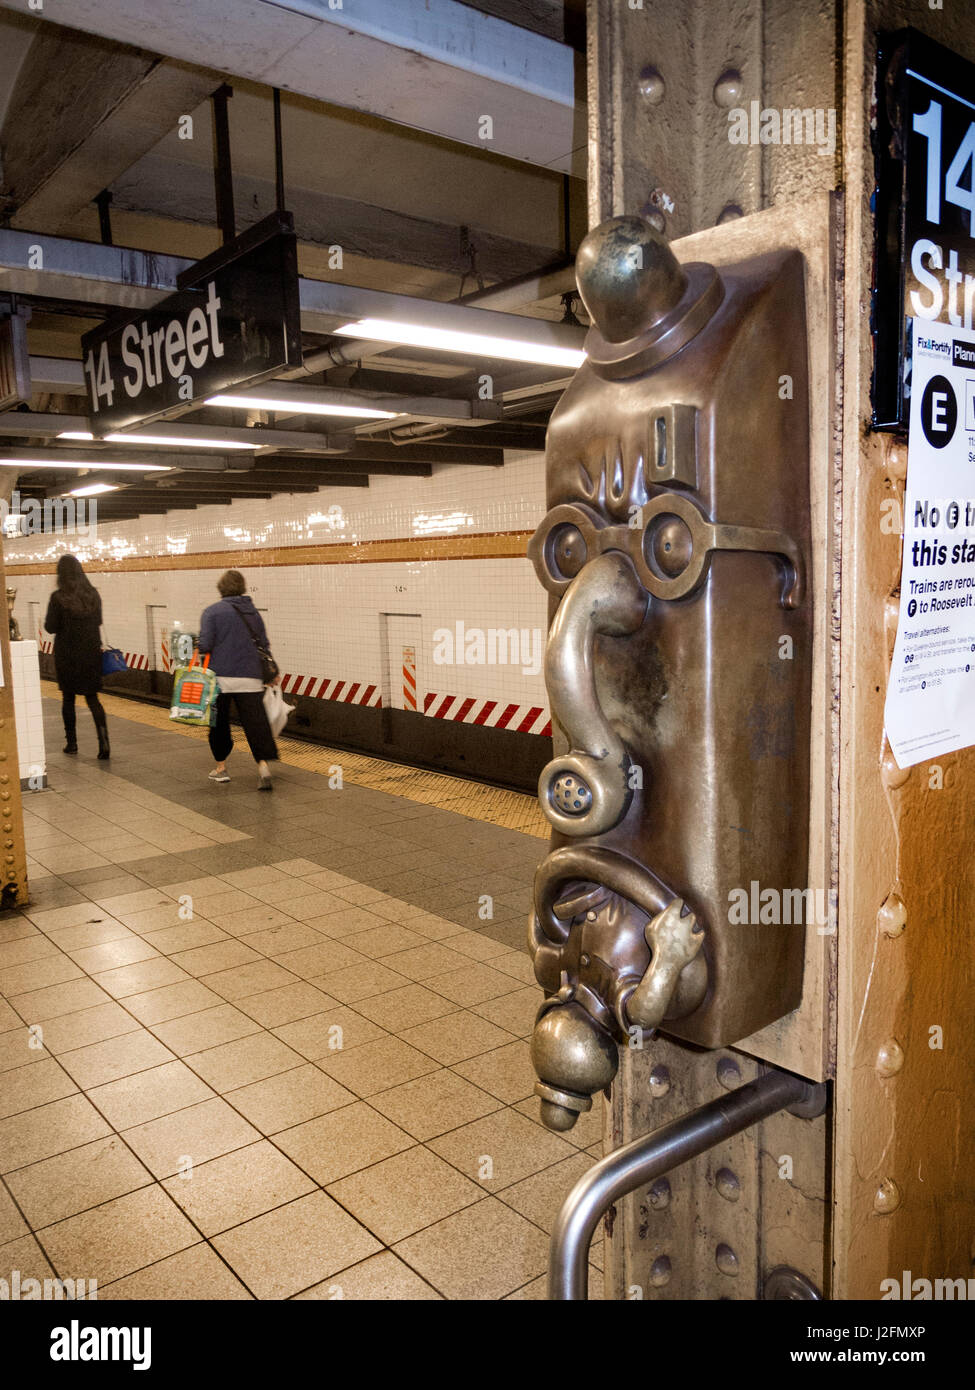 Un drôle de visage caricature sur la plate-forme du métro 14th Street à Manhattan, New York City, fait partie d'un projet d'art décoratif du métro. Banque D'Images